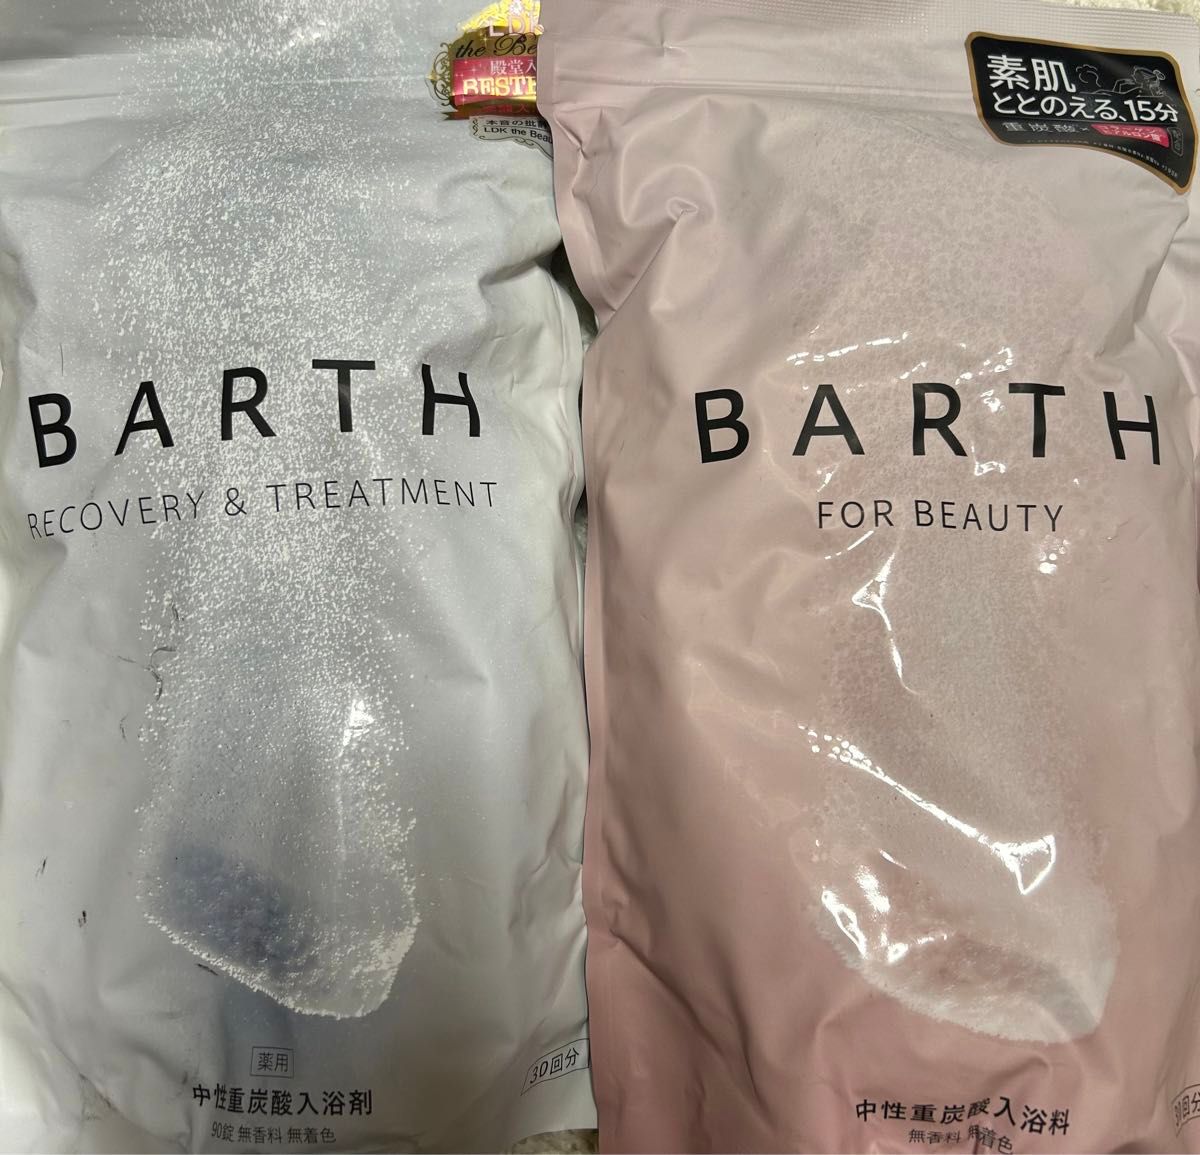 2袋セットBARTH FOR BEAUTY 中性重炭酸入浴料バース - 入浴剤